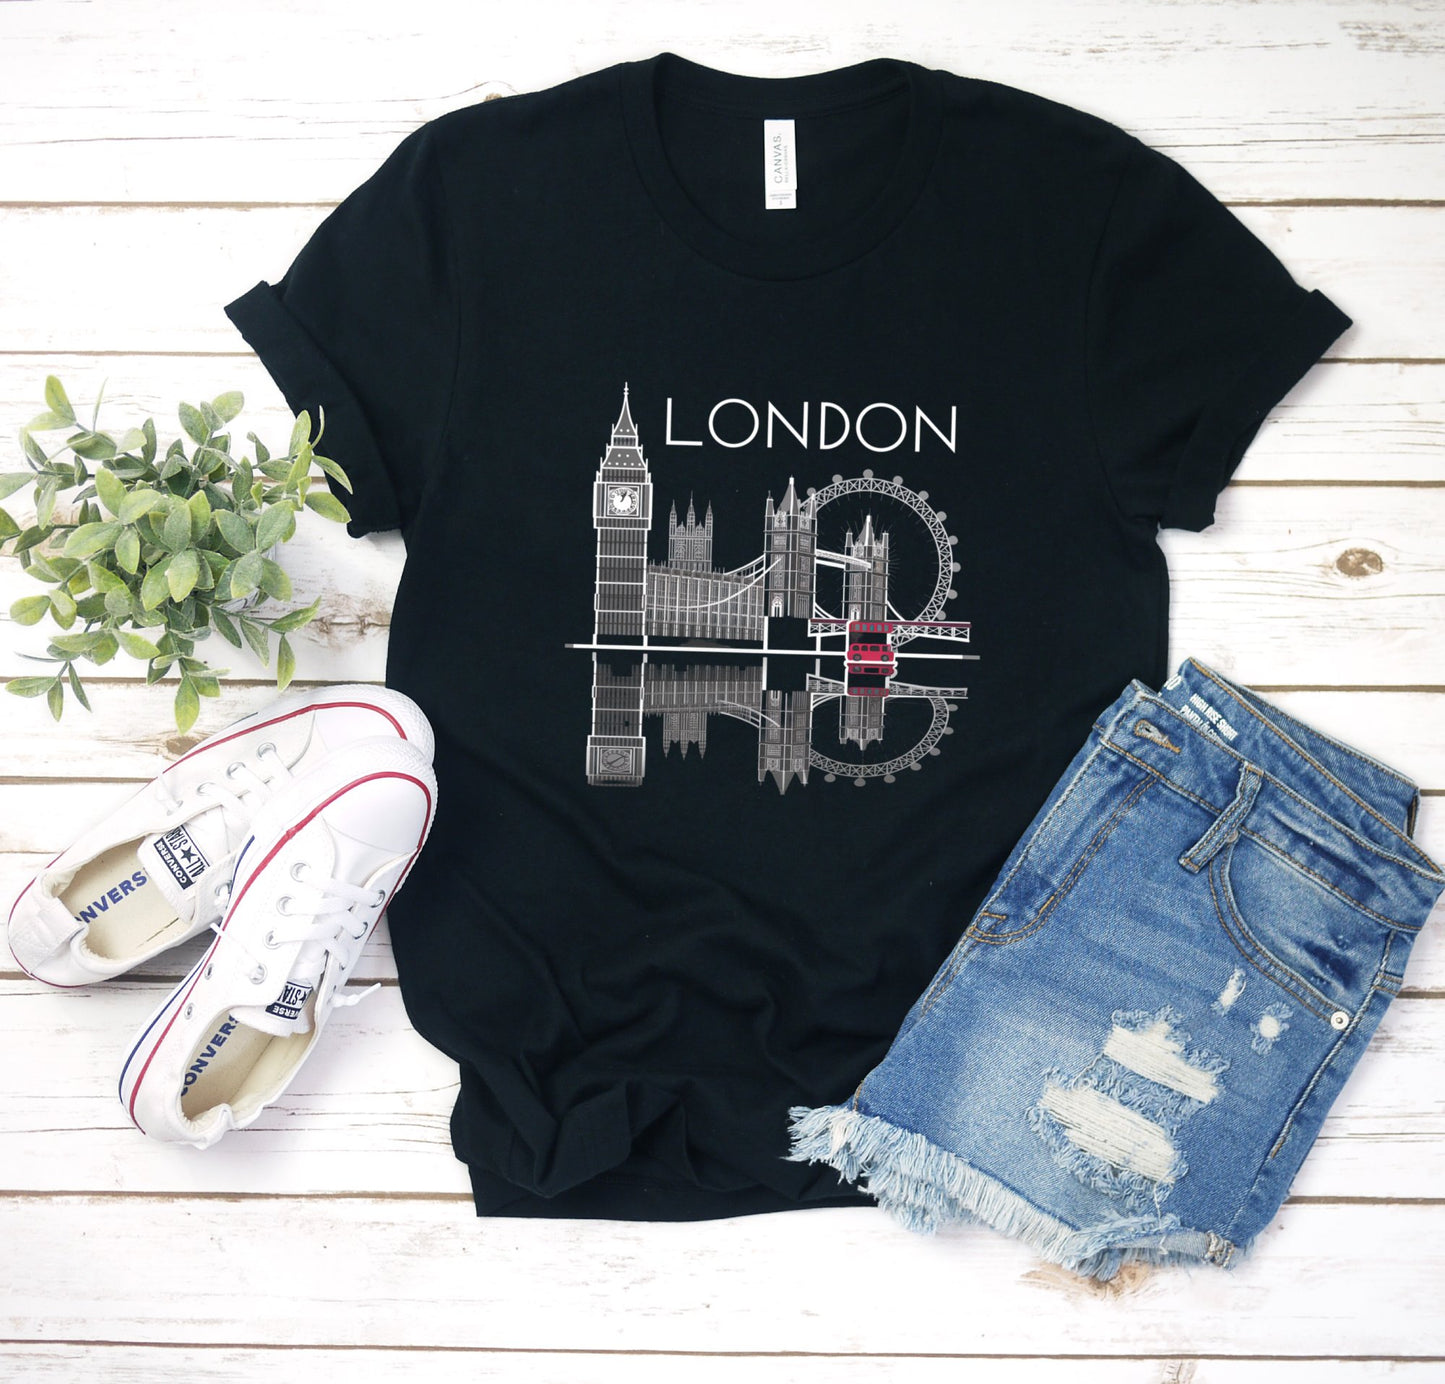 Explore London